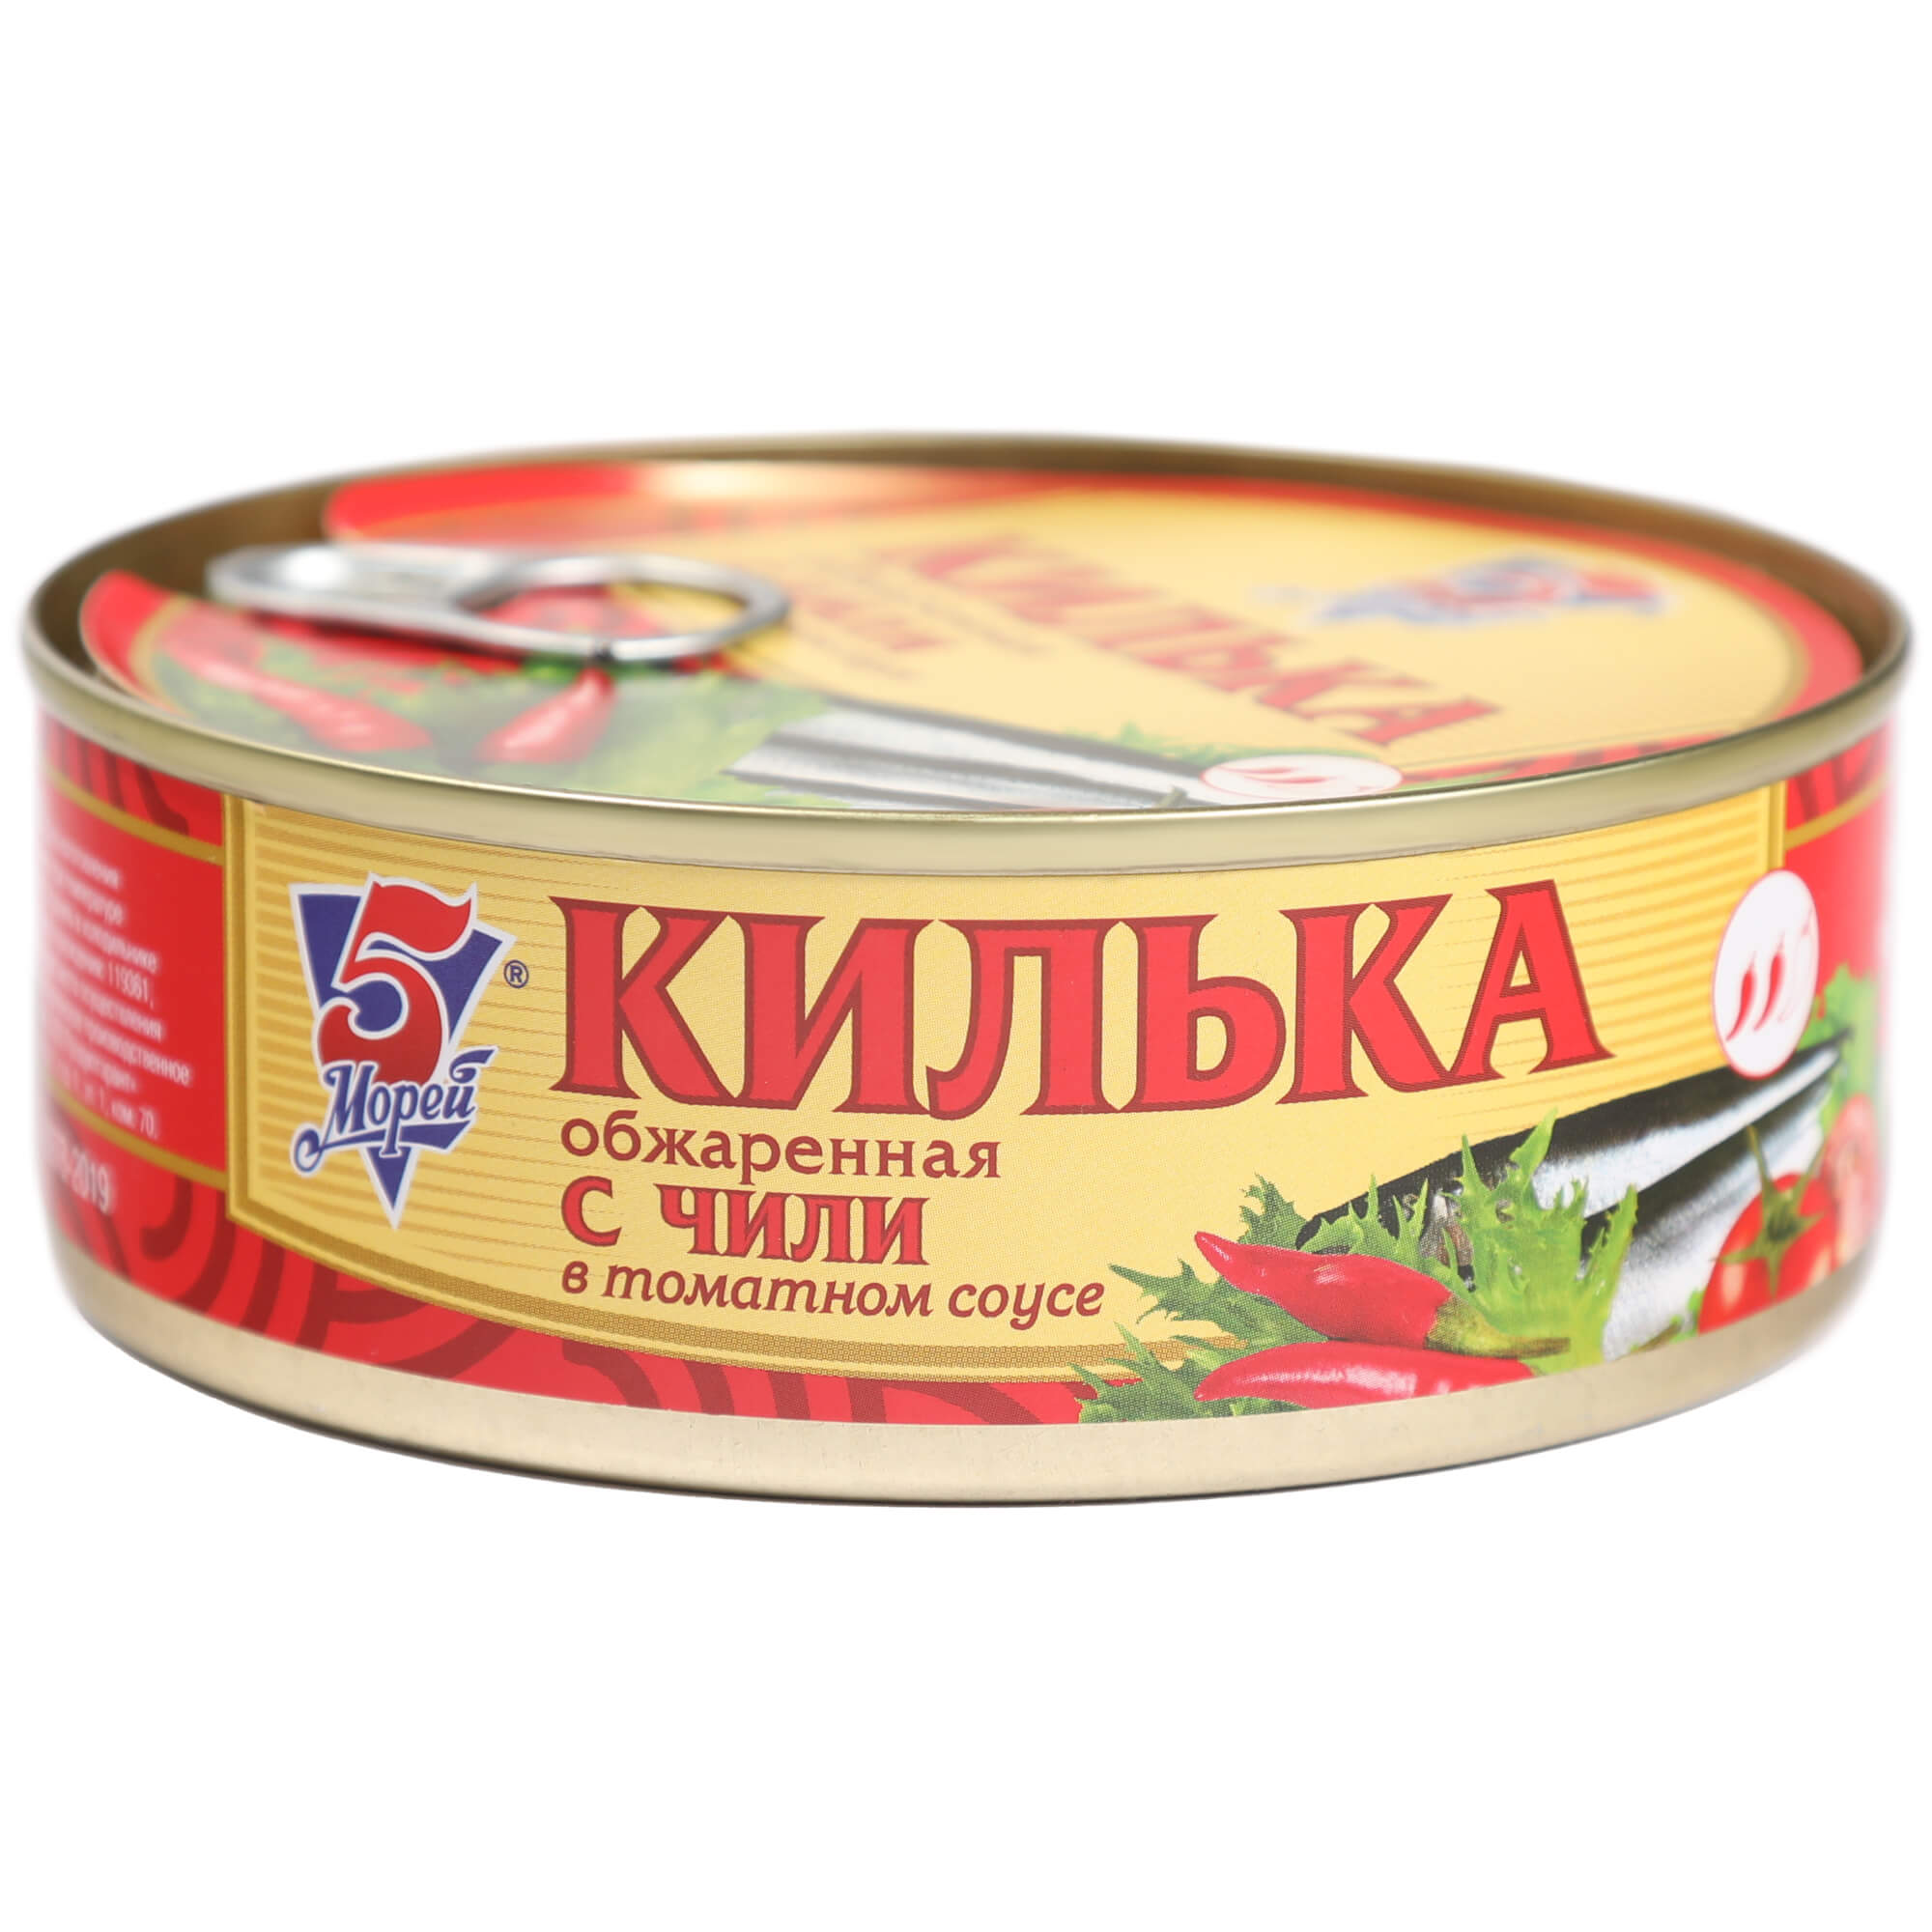 Килька Keano 5 Морей в соусе чили 240 г килька балтийская барс в томатном соусе чили 250 г